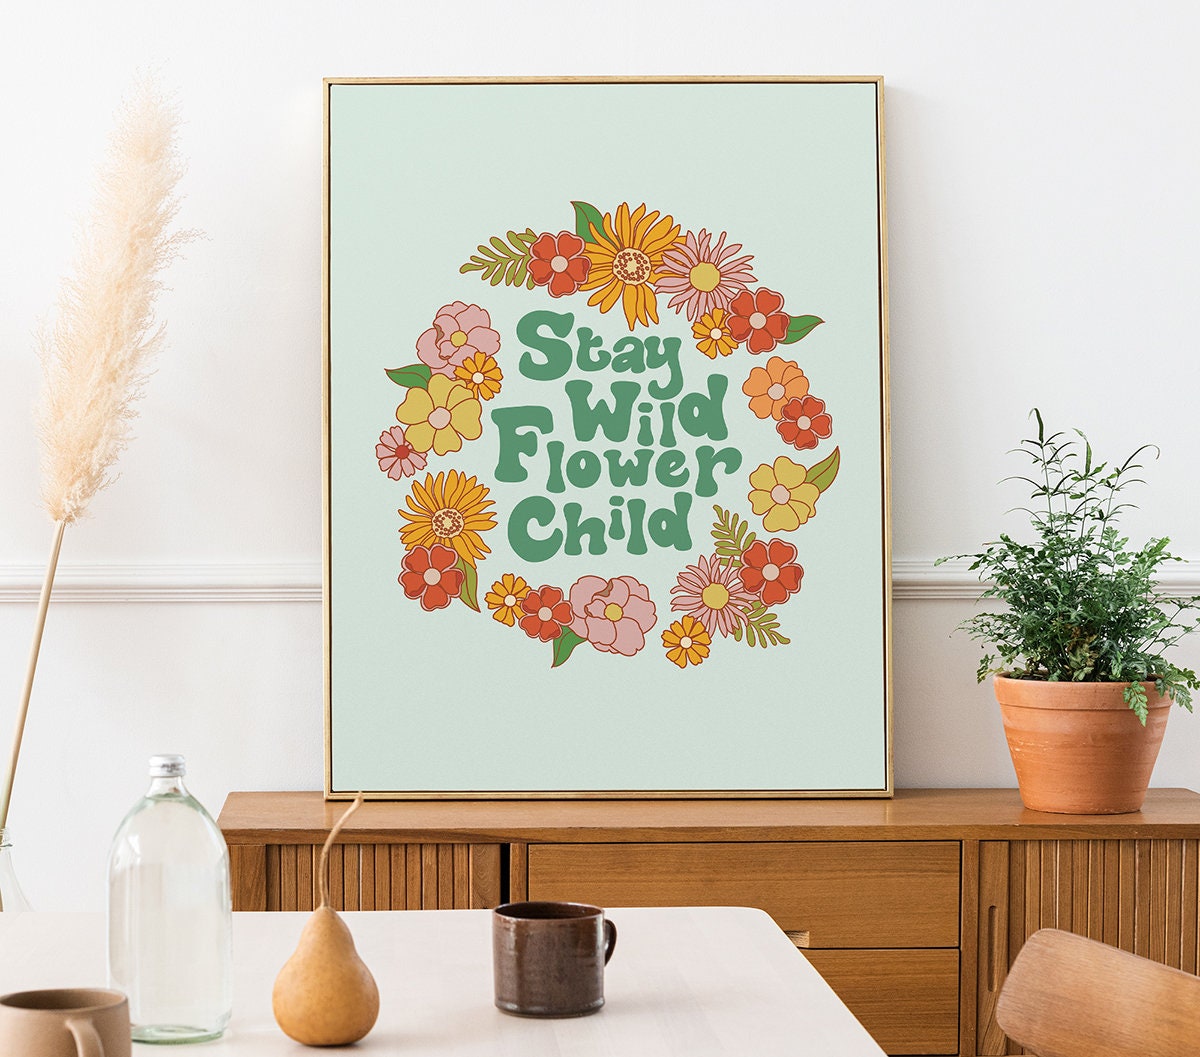 Stay Wild Flower Child Poster